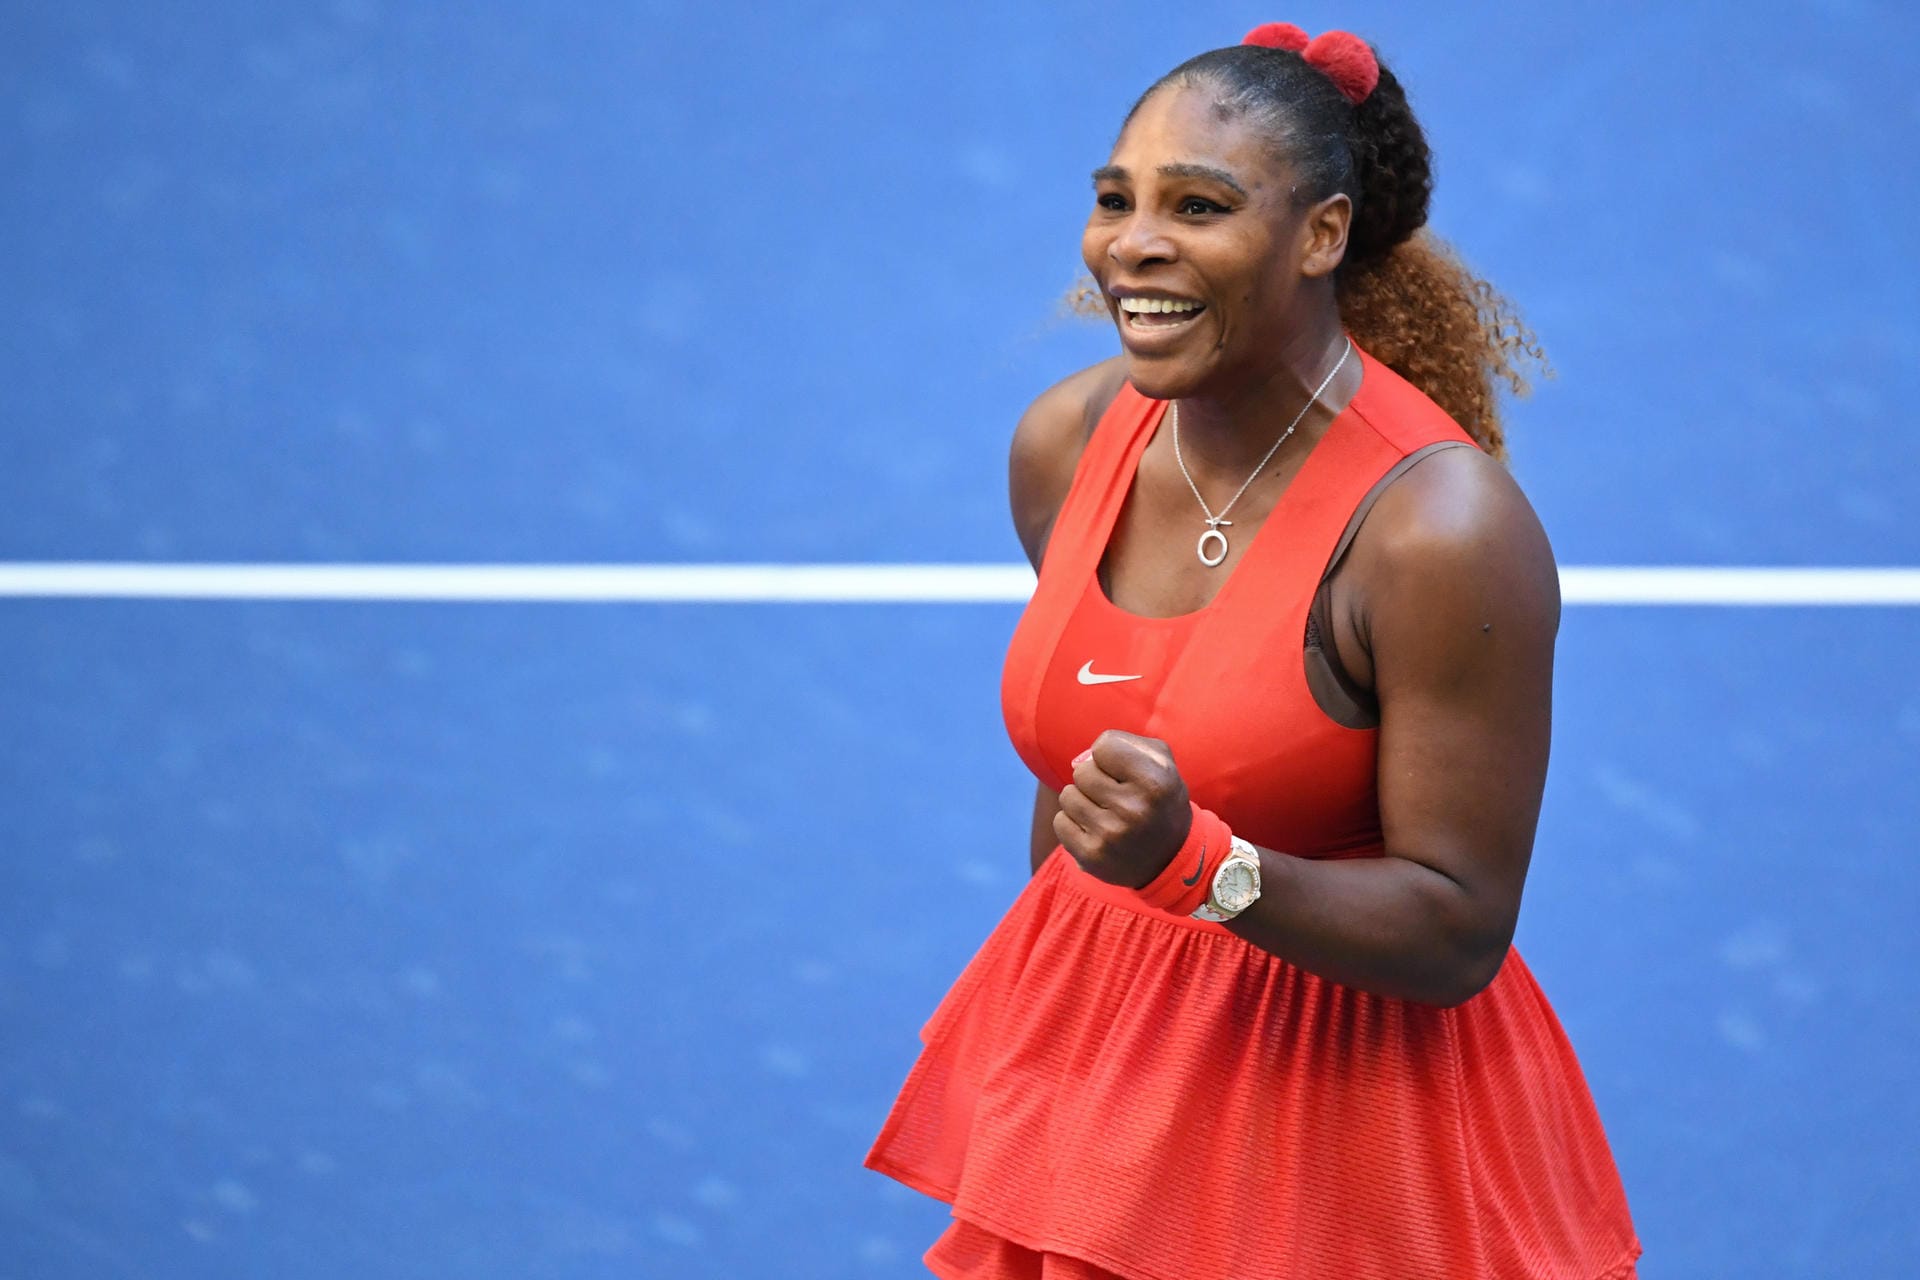 Serena Williams: "Wenn du es schaffst, ein Kind auf die Welt zu bringen, dann kannst du alles schaffen" Tennisspielerin Serena Williams nach Match im Viertelfinale der US Open gegen die Bulgarin Zwetana Pironkowa, die ebenfalls Mutter ist.